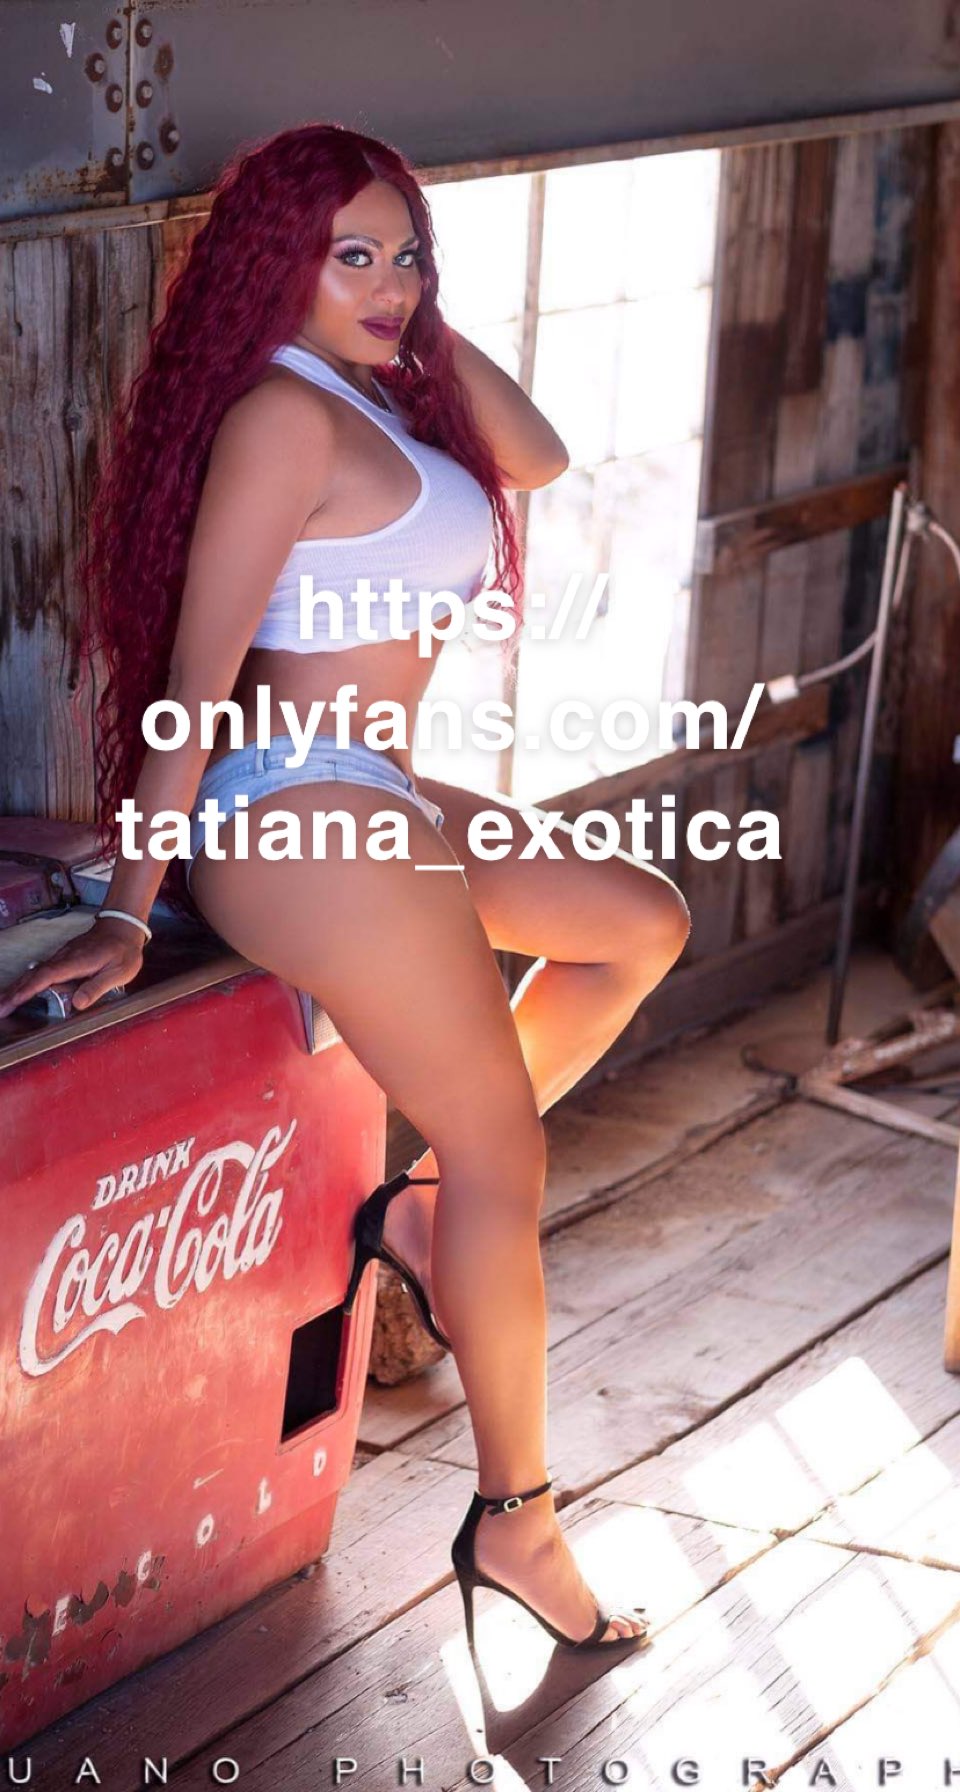 Tatiana exotica ts 